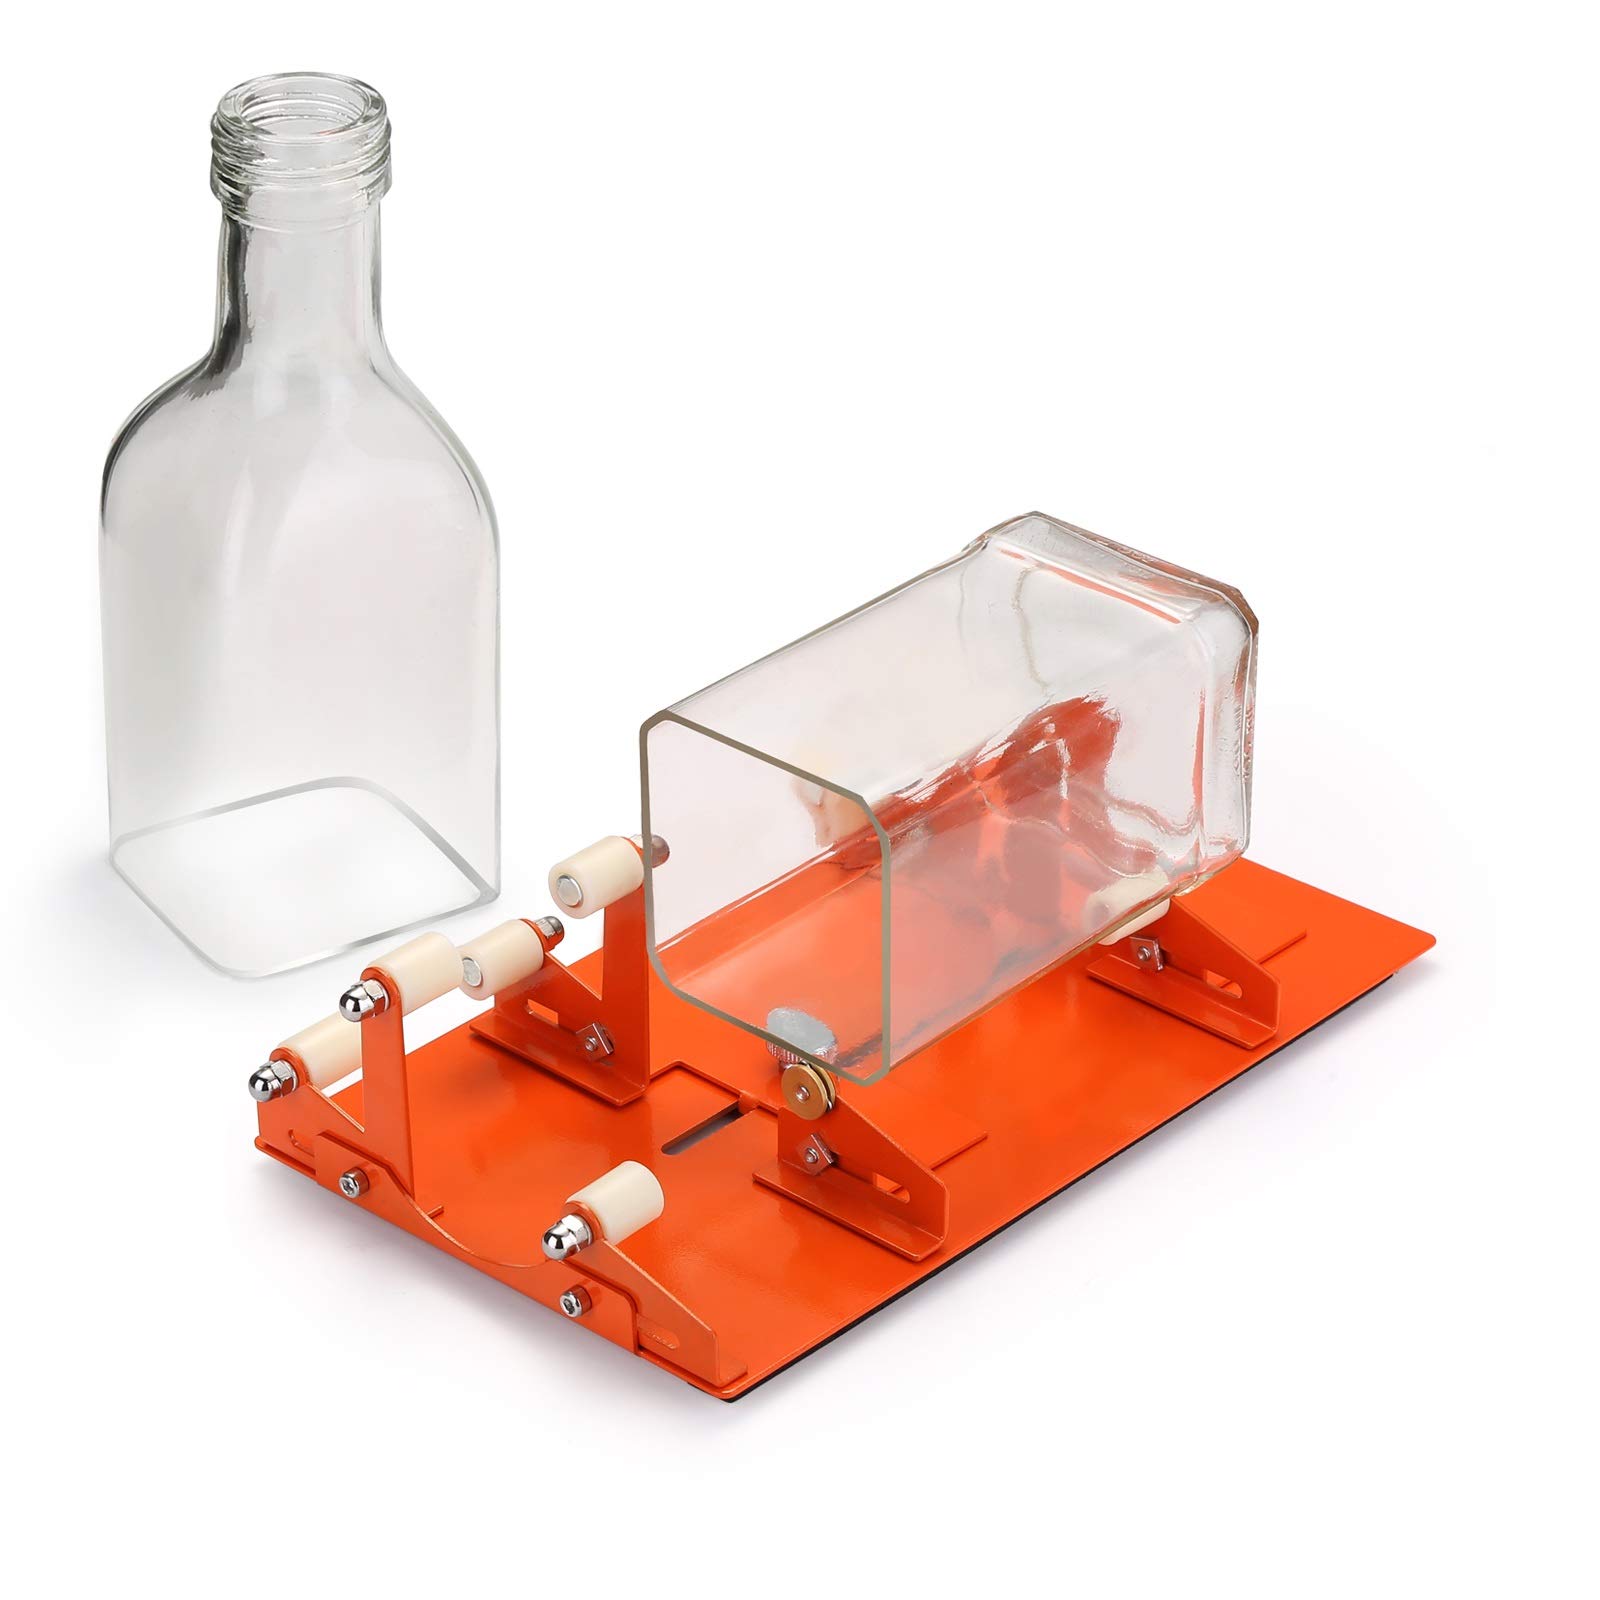 Glass Bottle Cutter, Upgrade Bottle Cutter & Glass Kuwait